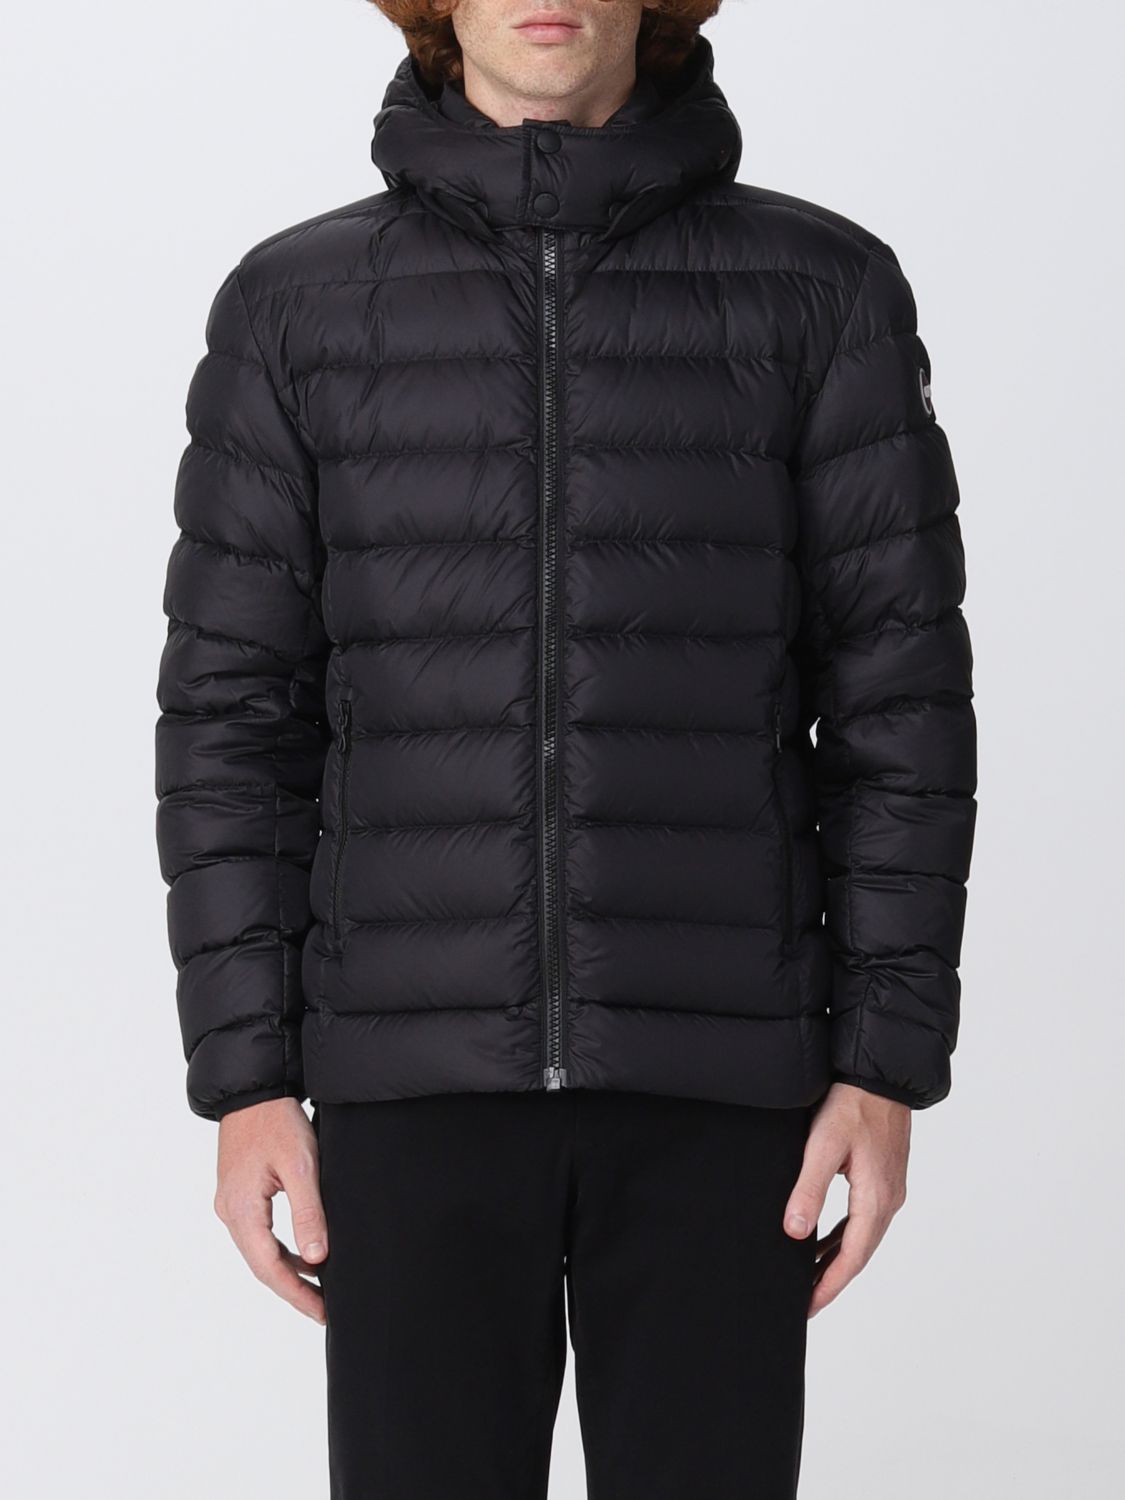 COLMAR: jacket for man - Black | Colmar jacket 1250R9WY online on ...